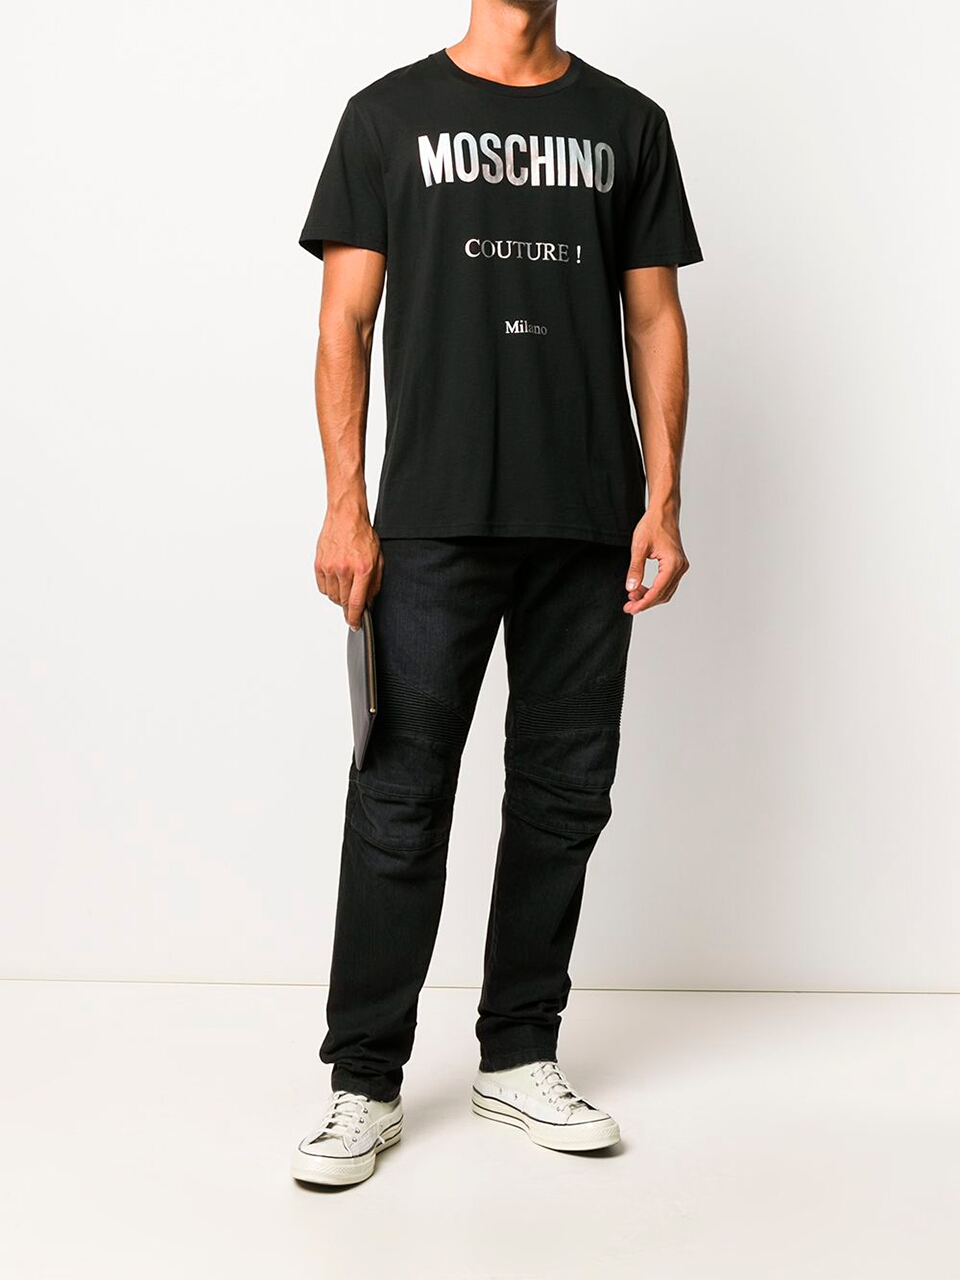 Imagem de: Camiseta Moschino Preta com Logo Couture Metalico